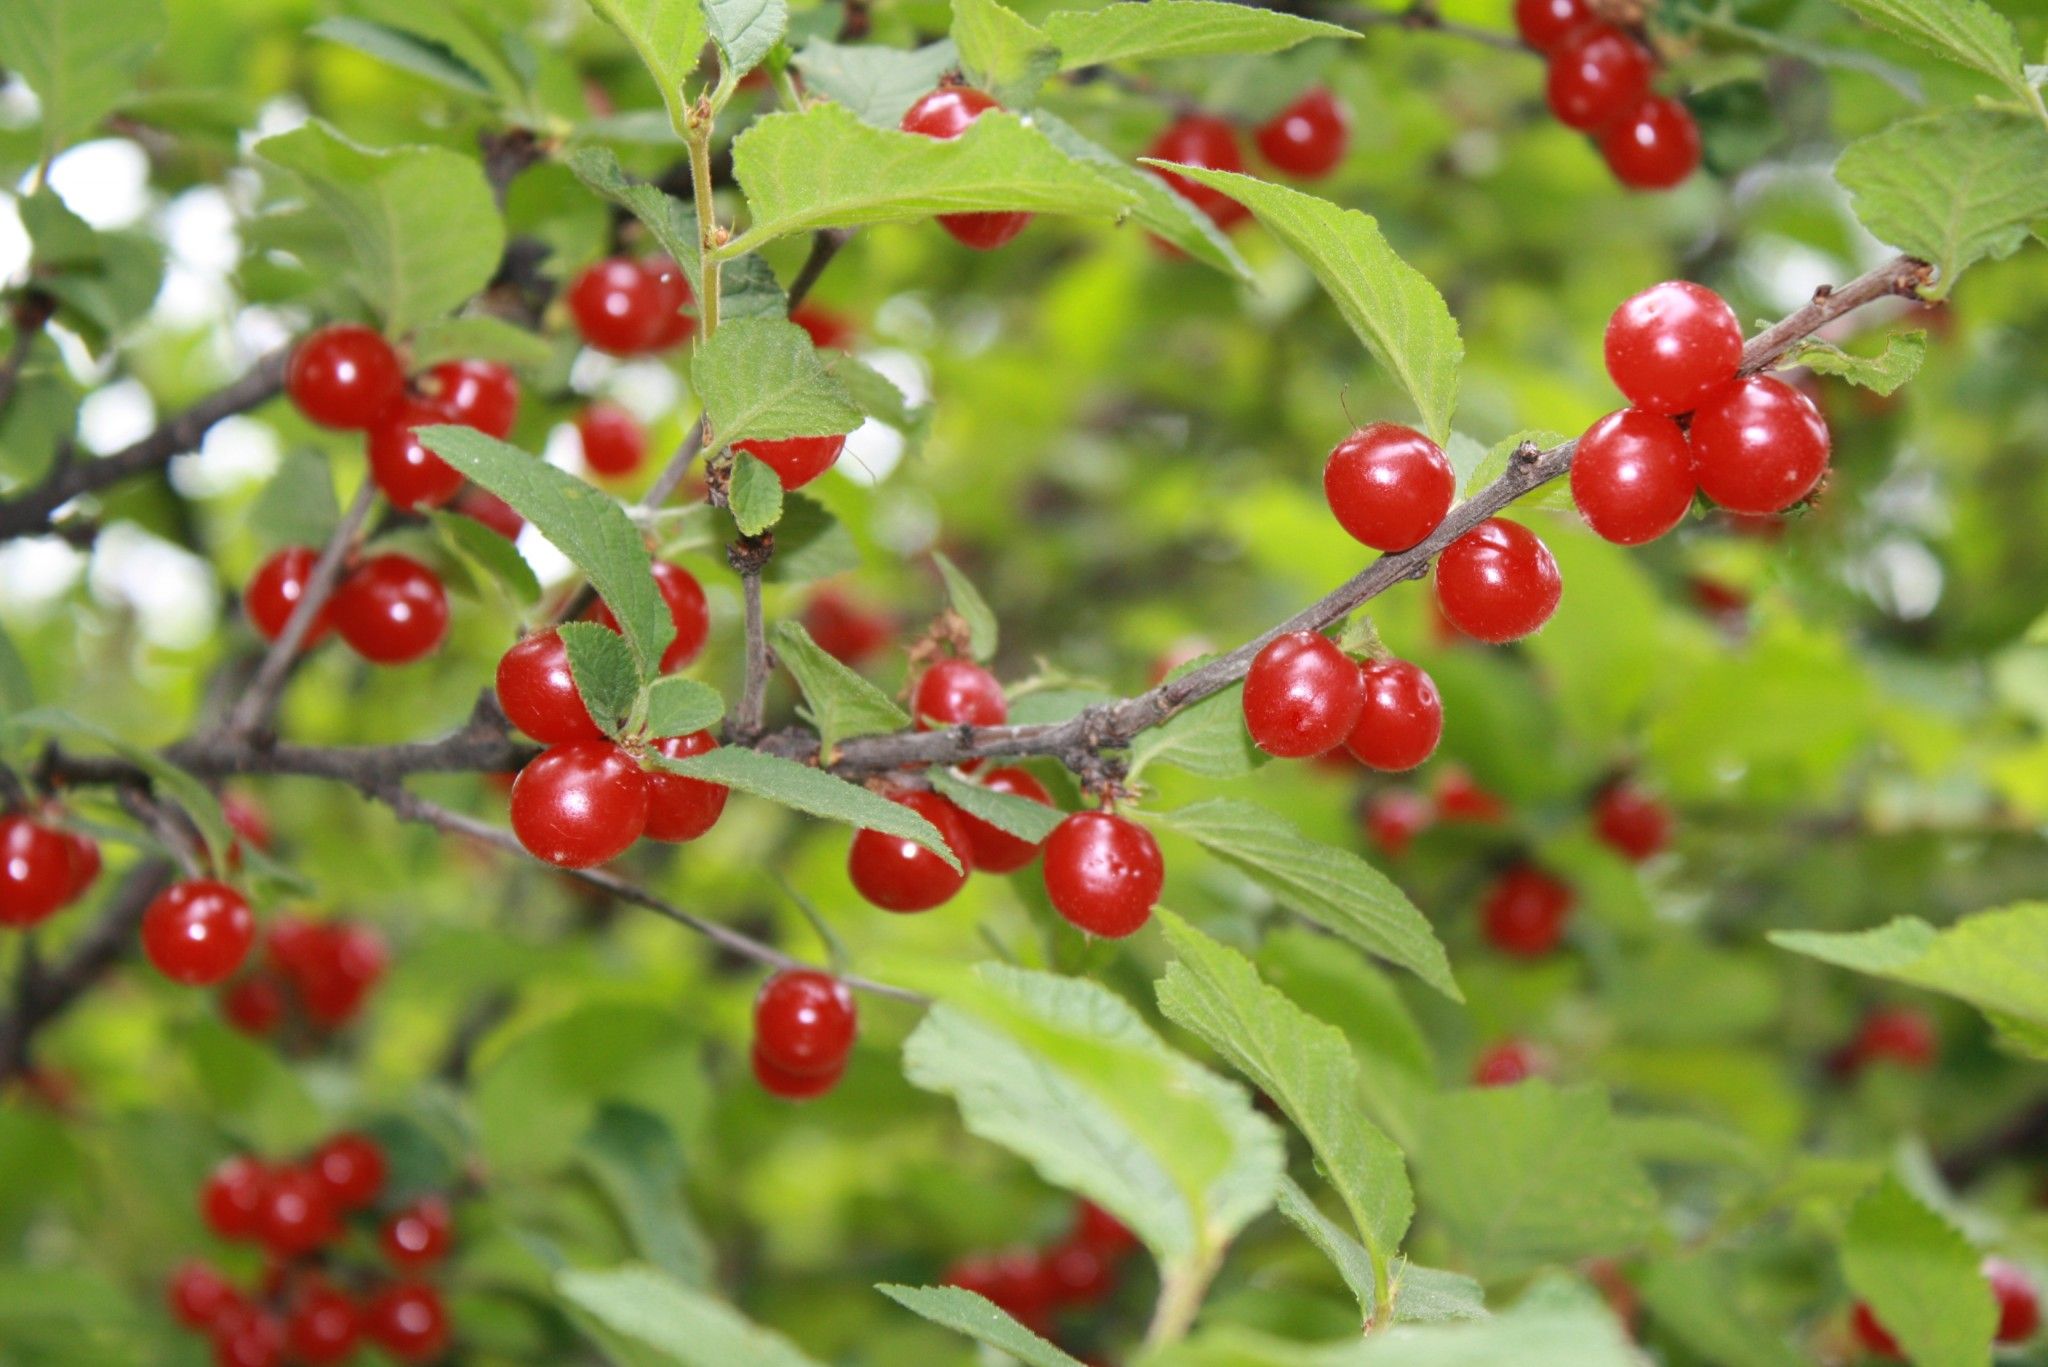 Nanking cherry | Grandma | Pinterest | Red berries and Berries